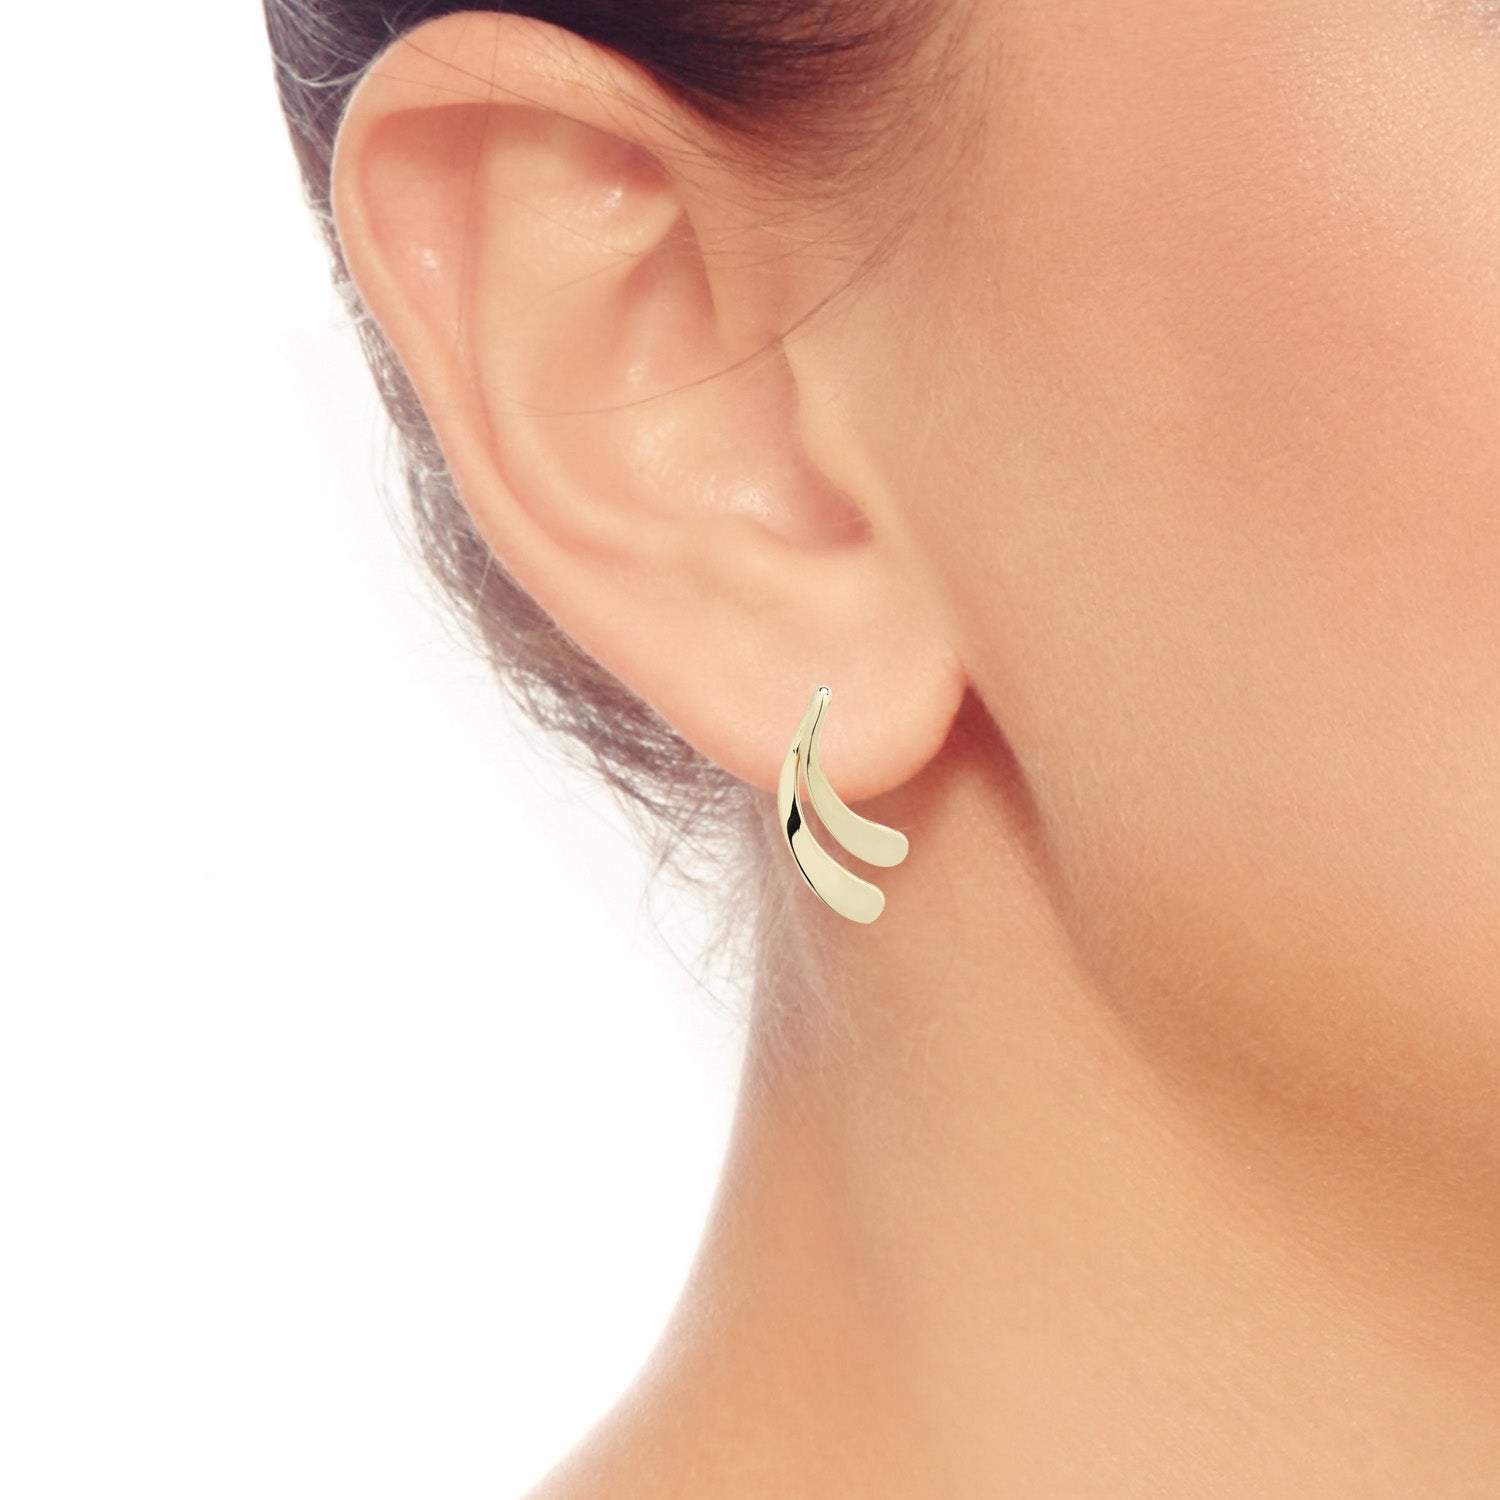 Leaf Earrings in 14kt Yellow Gold